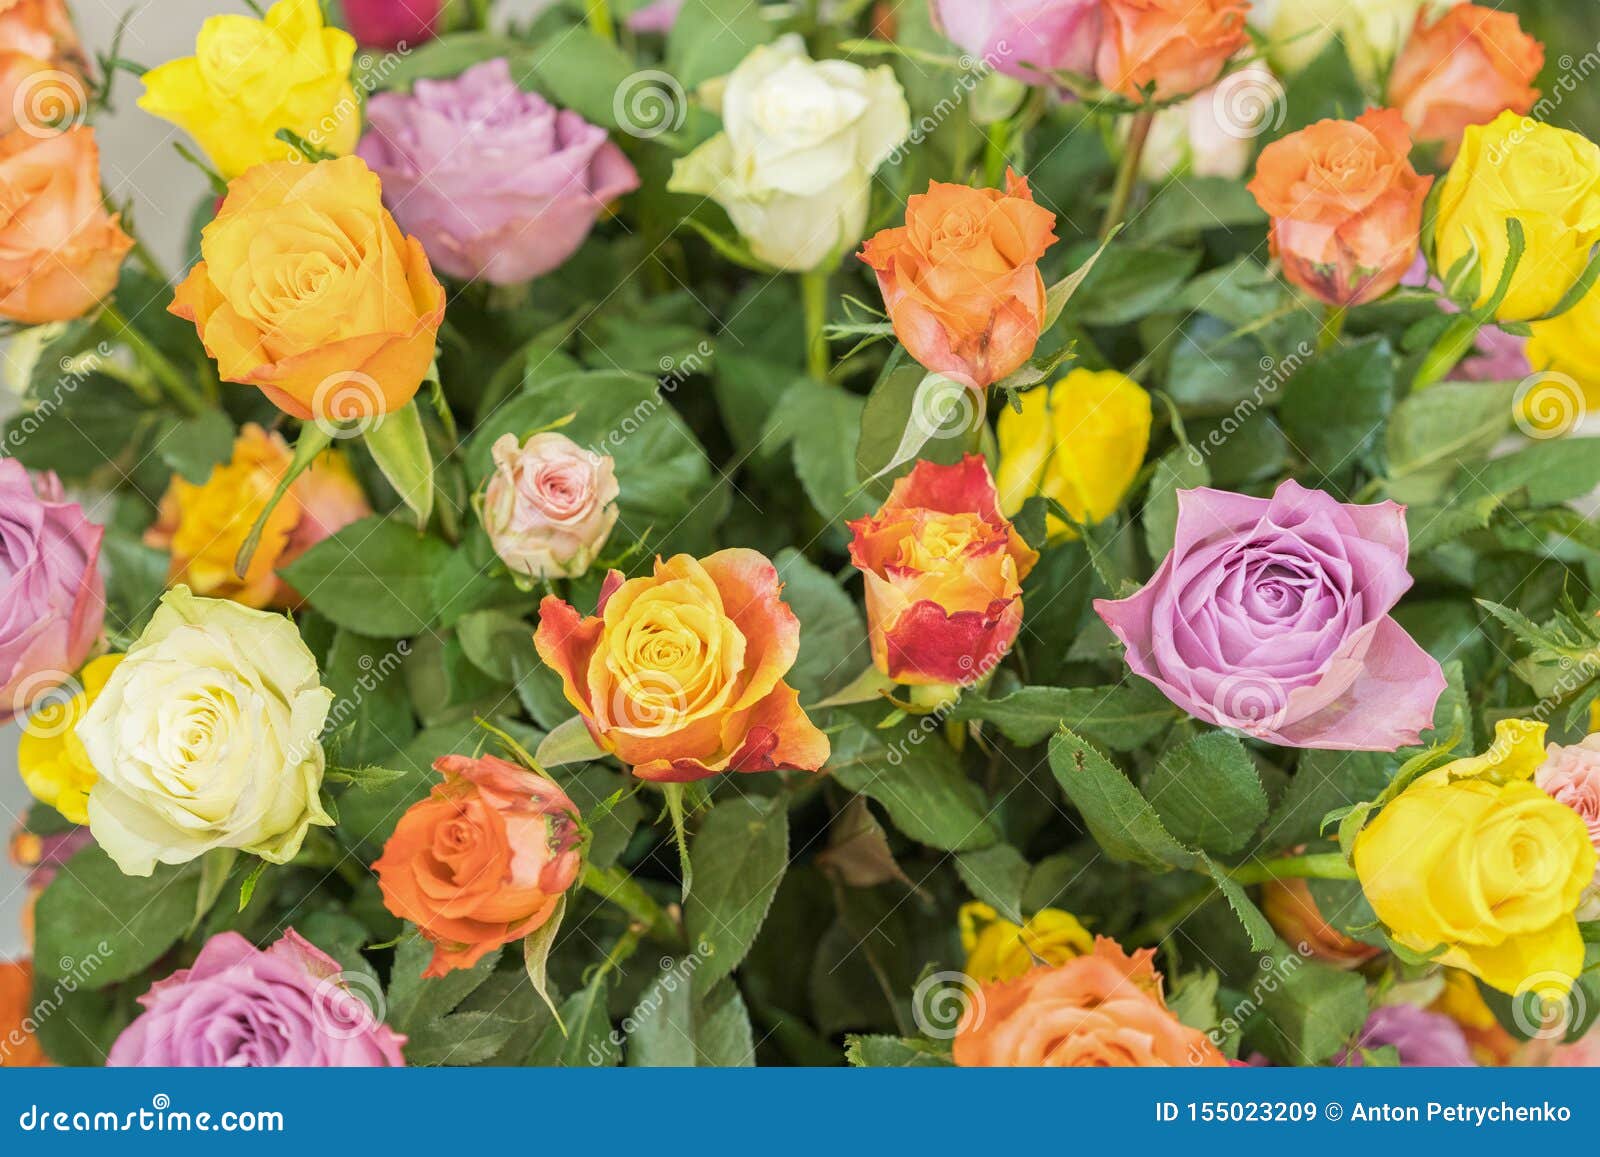 Bouquet Multicolor De Rosas Fundo Natural Das Flores, Foco Suave Fundo De  Flores De Rosas Coloridas, Grupo De Imagem de Stock - Imagem de planta,  flor: 155023209